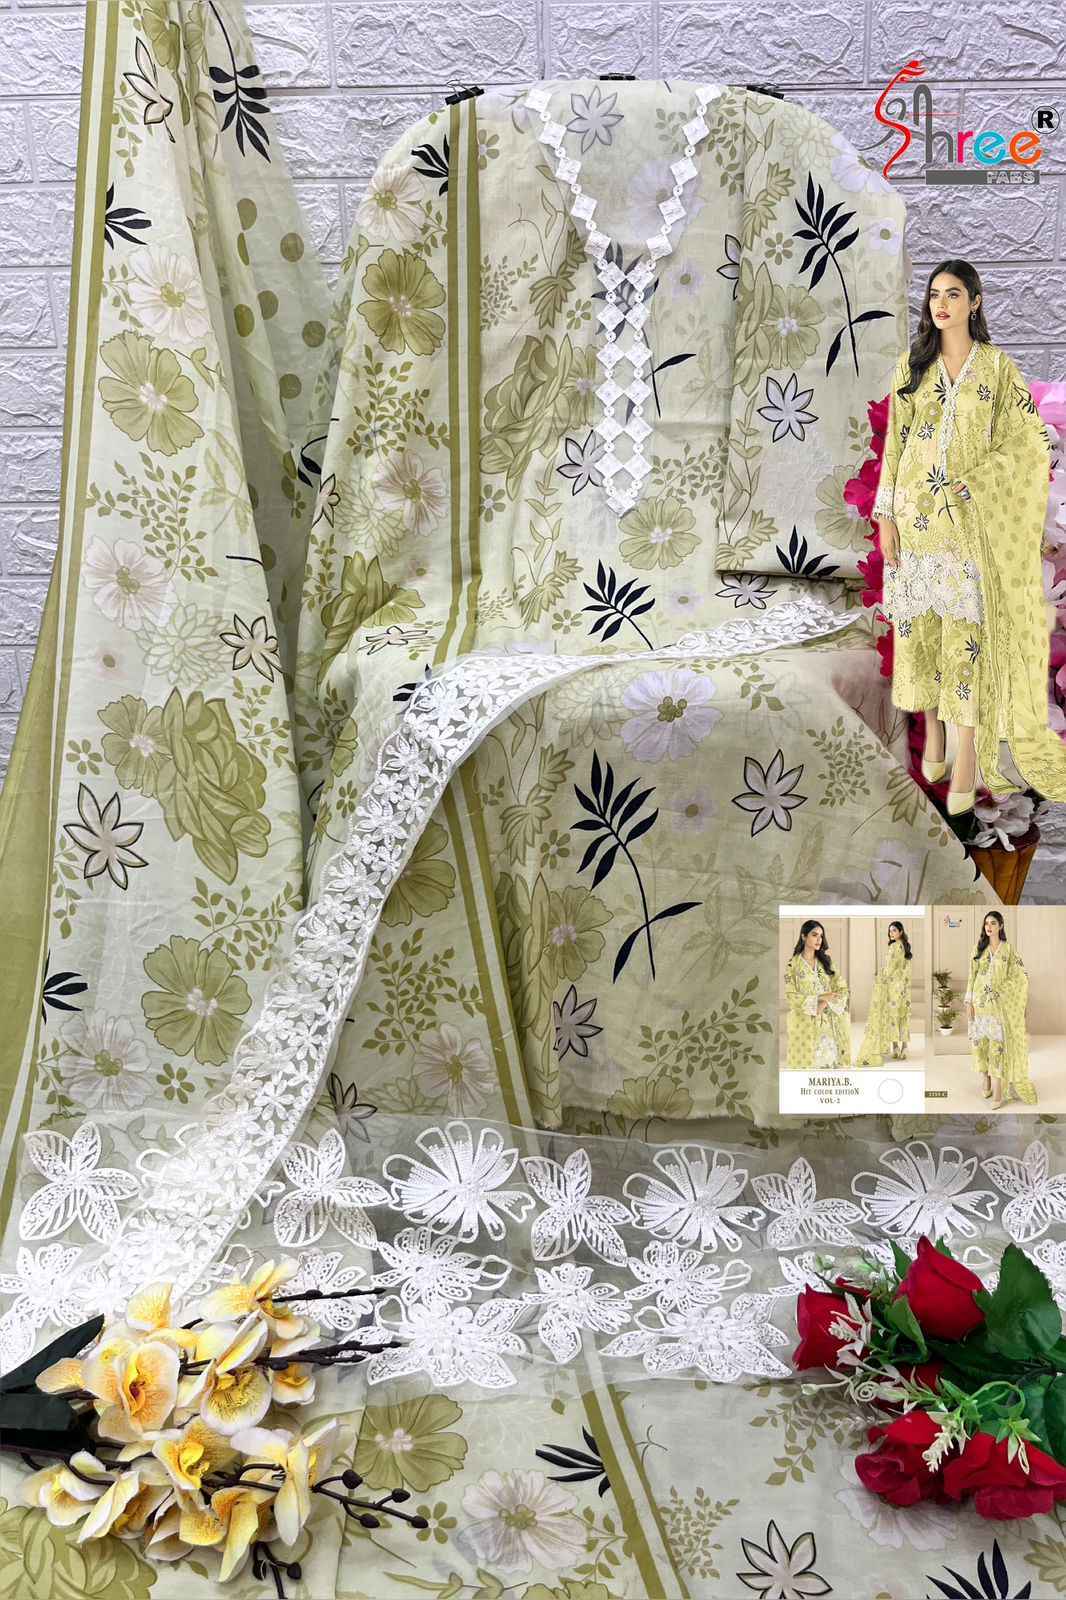 Shree Fabs Maria B Hit Color Edition Vol 2 Cotton Dress Material 4 pcs 